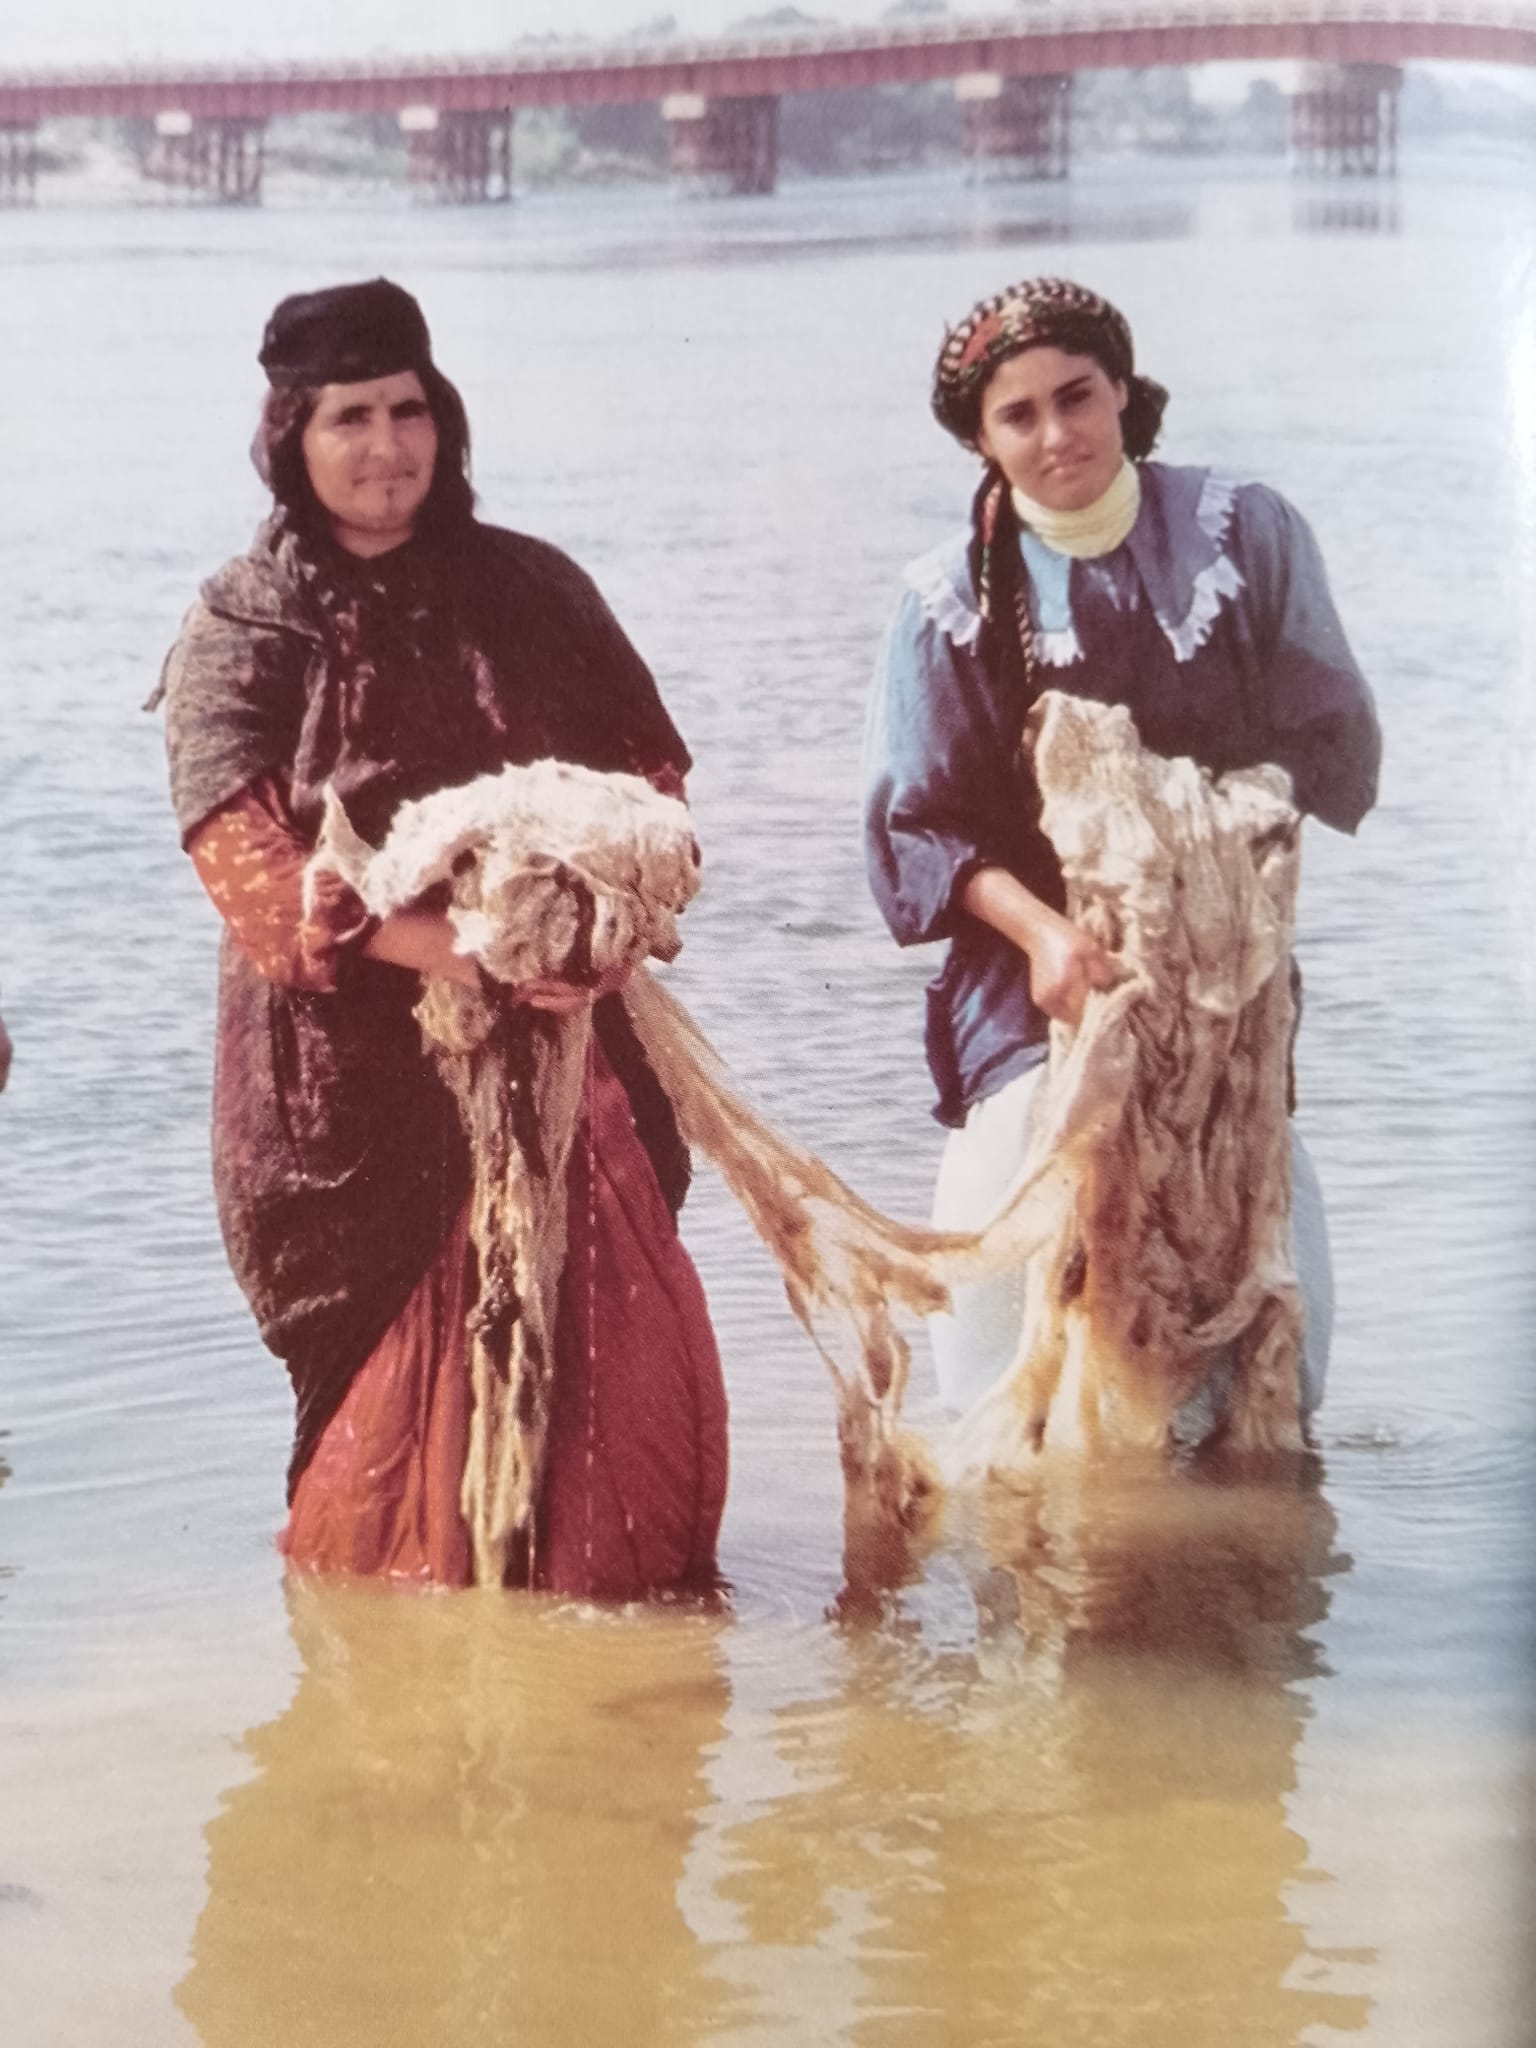 التاريخ السوري المعاصر - غسيل الصوف في مياه نهر الفرات عام 1999